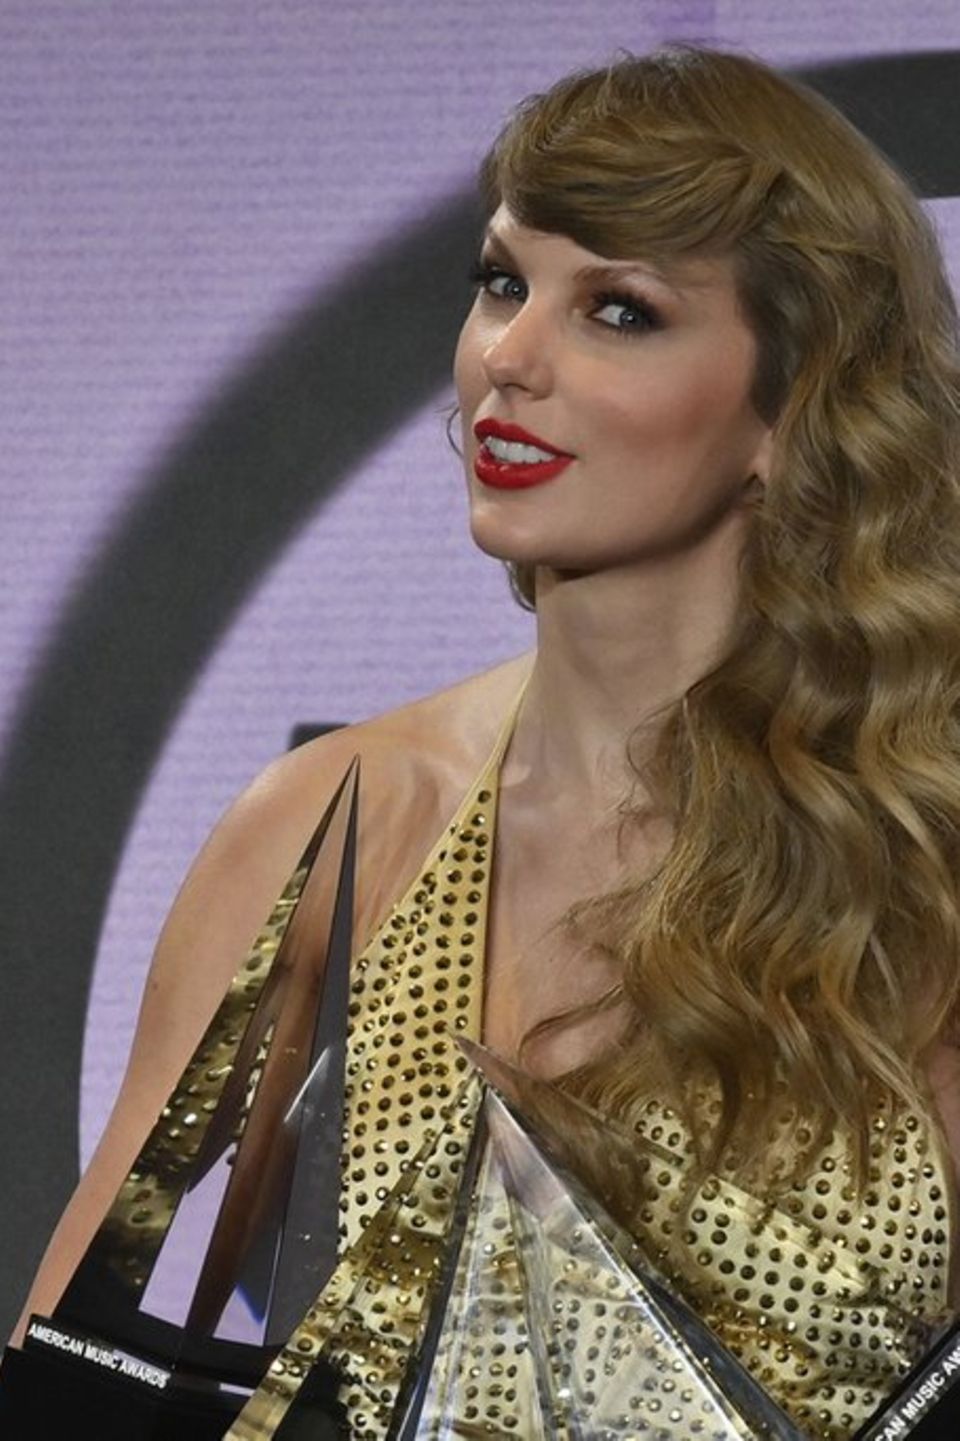 Taylor Swift ist die zweitreichste Sängerin im Vergleich der erfolgreichsten Self-Made-Frauen der USA.